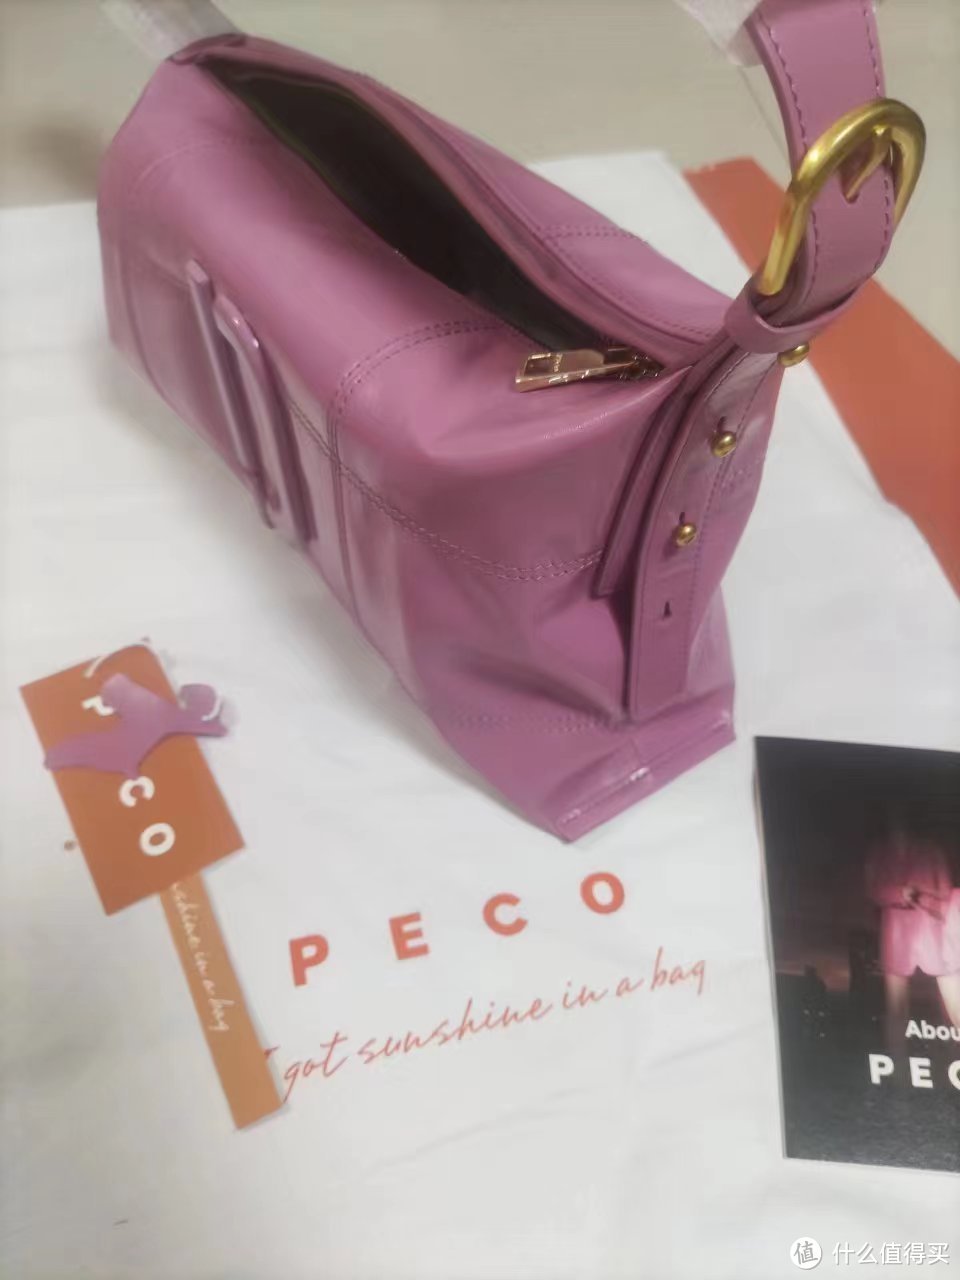 买给老婆的PECO粉色枕头包终于到手了